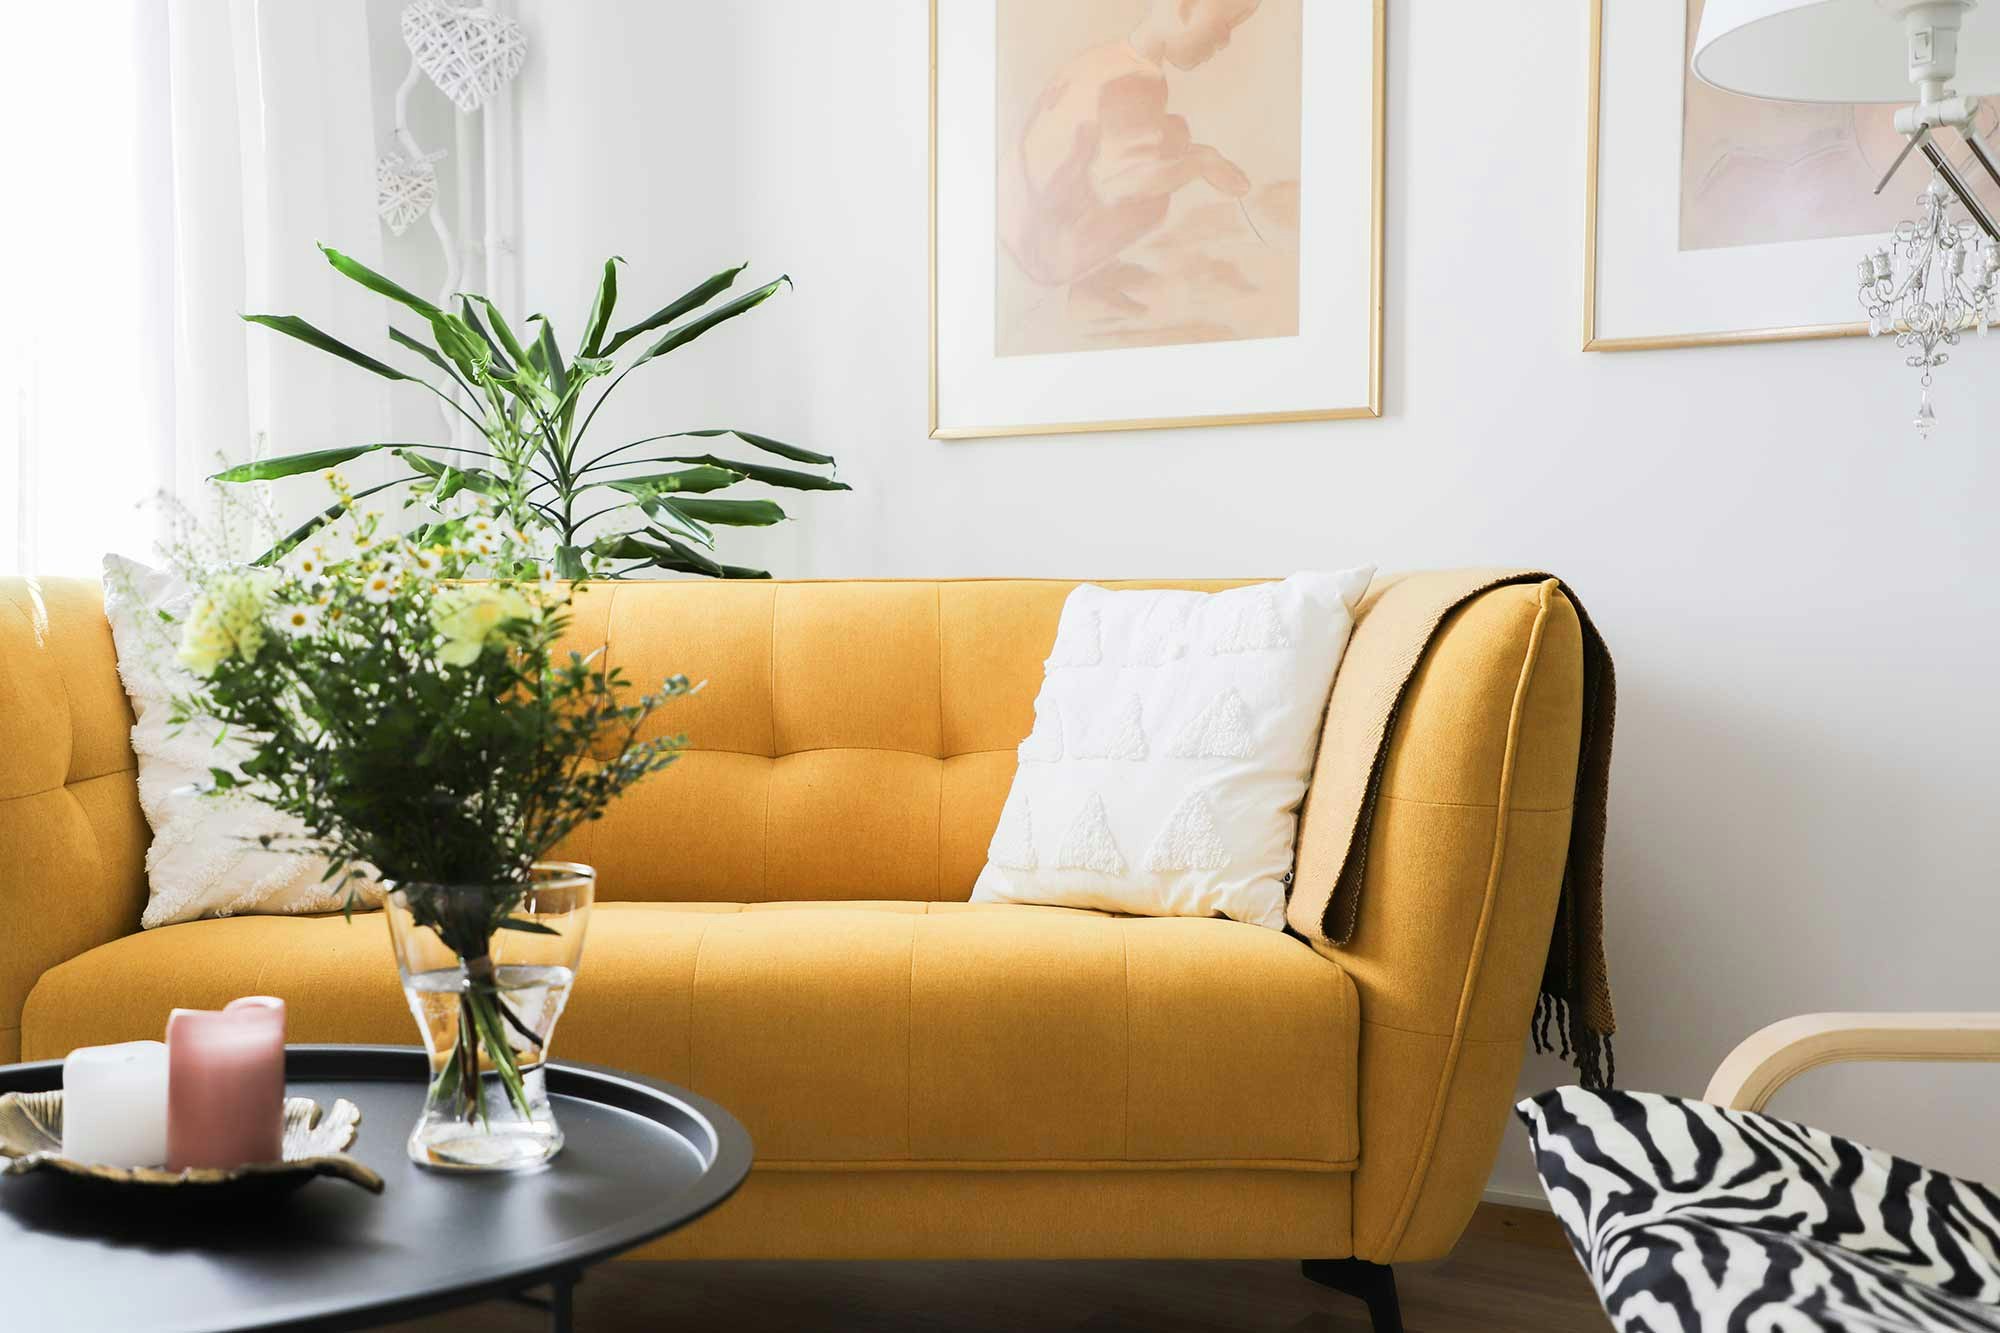 Keltainen sohva, jossa kaksi valkoista tyynyä.